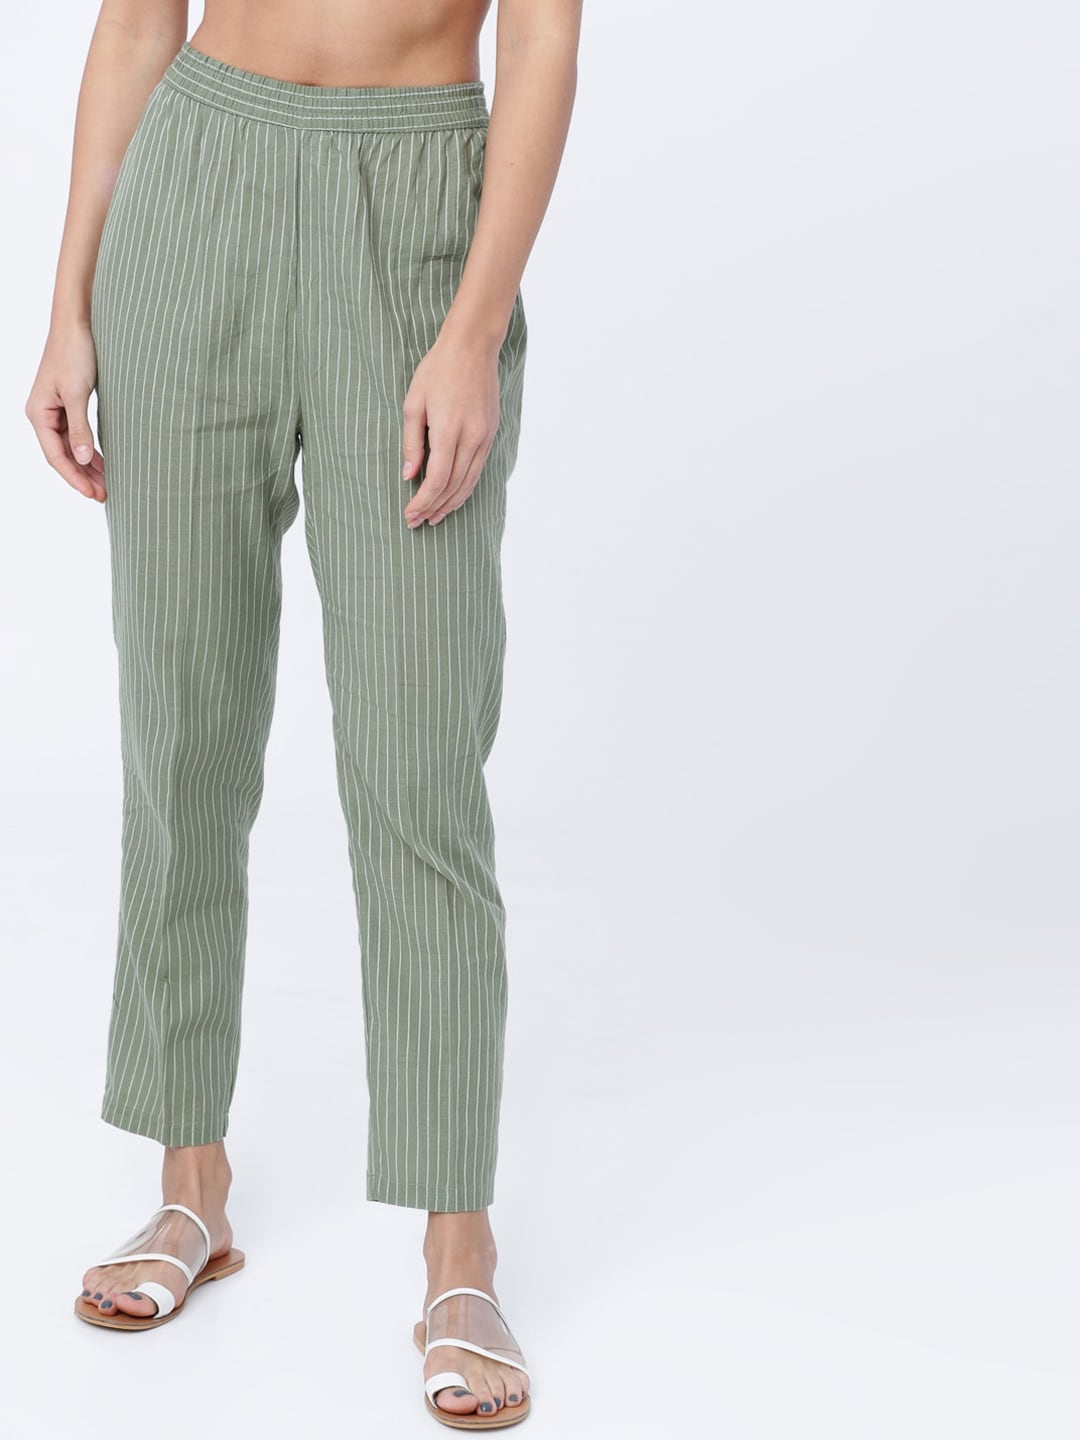 Vishudh Women Olive Green & White Striped Pyjamas Price in India